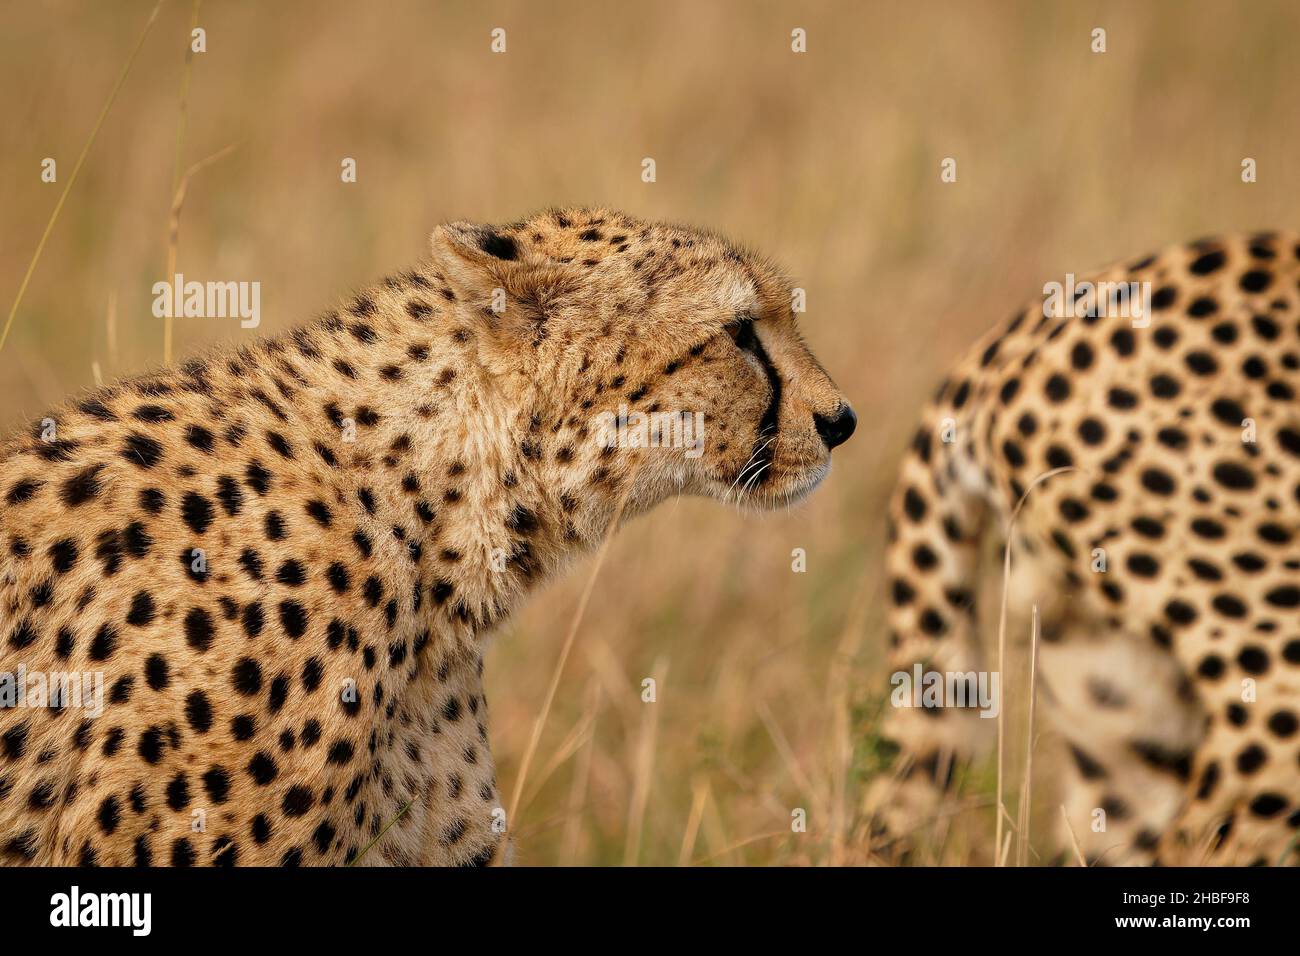 Cheetah - Acinonyx jubatus Grand chat originaire d'Afrique et du centre de l'Iran, l'animal terrestre le plus rapide, variété d'habitats savanes, chaînes de montagnes arides Banque D'Images